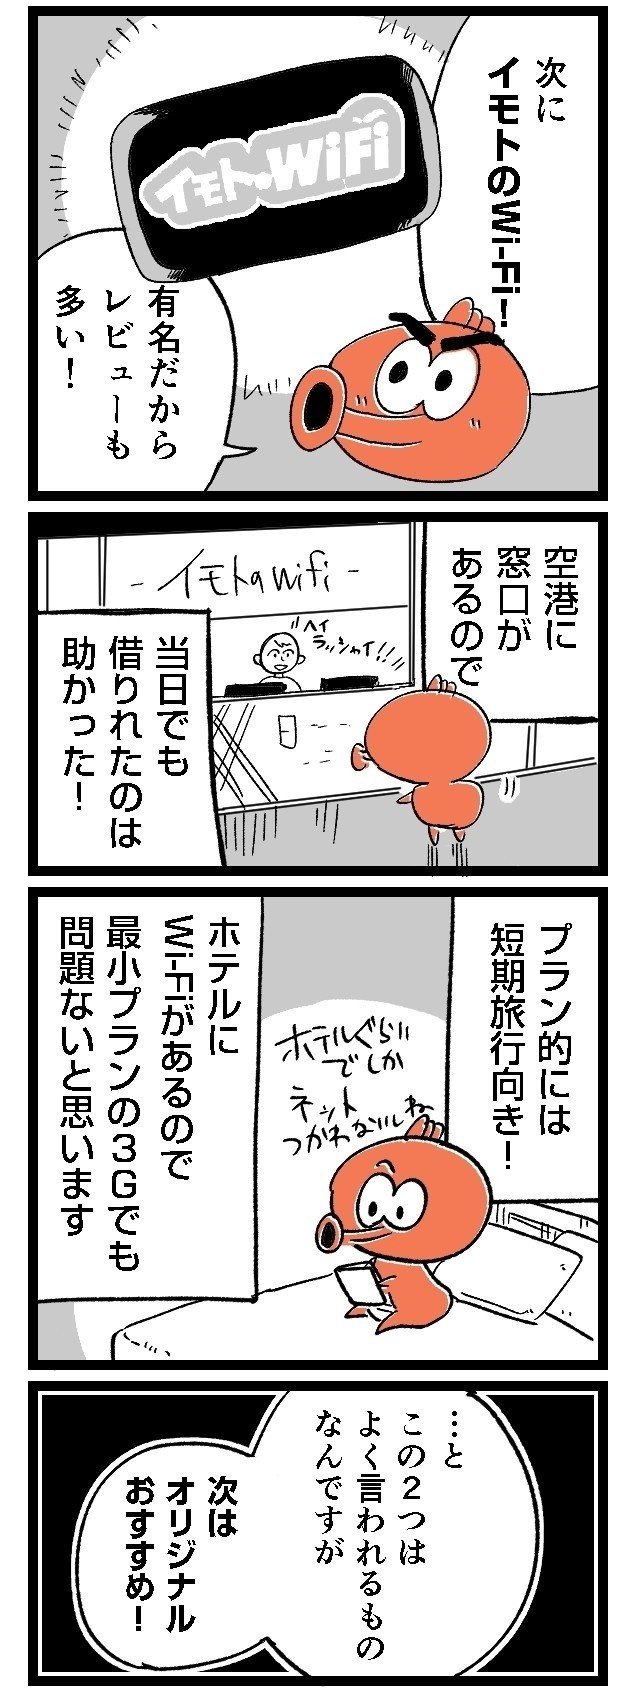 03ルポ漫画旅行_003